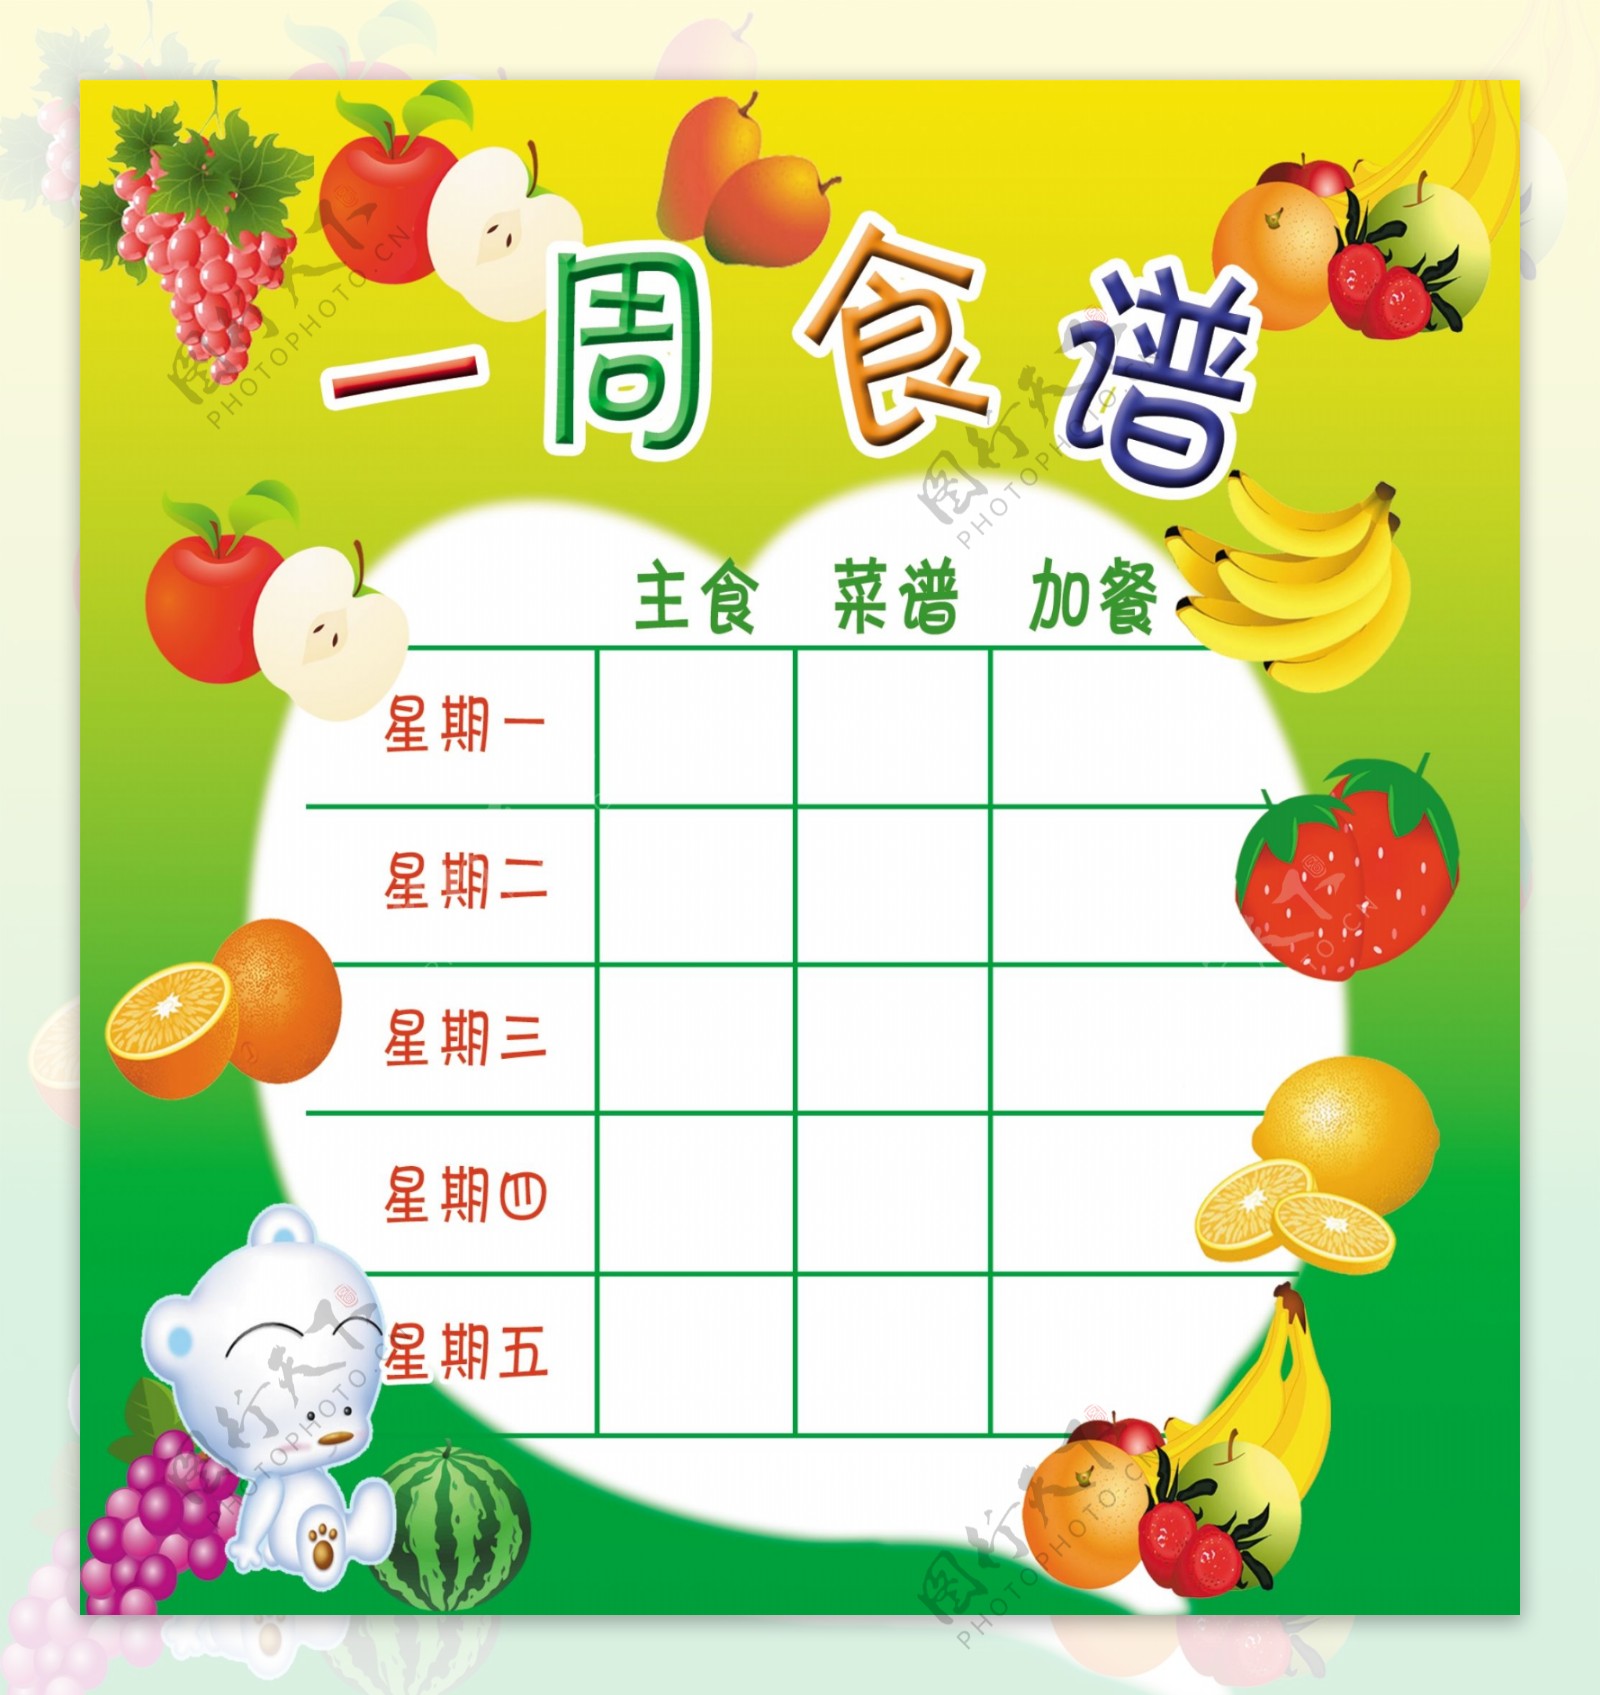 2018年9月12日幼儿一日菜谱 - 每日菜谱照片 - 杭州京江幼儿园